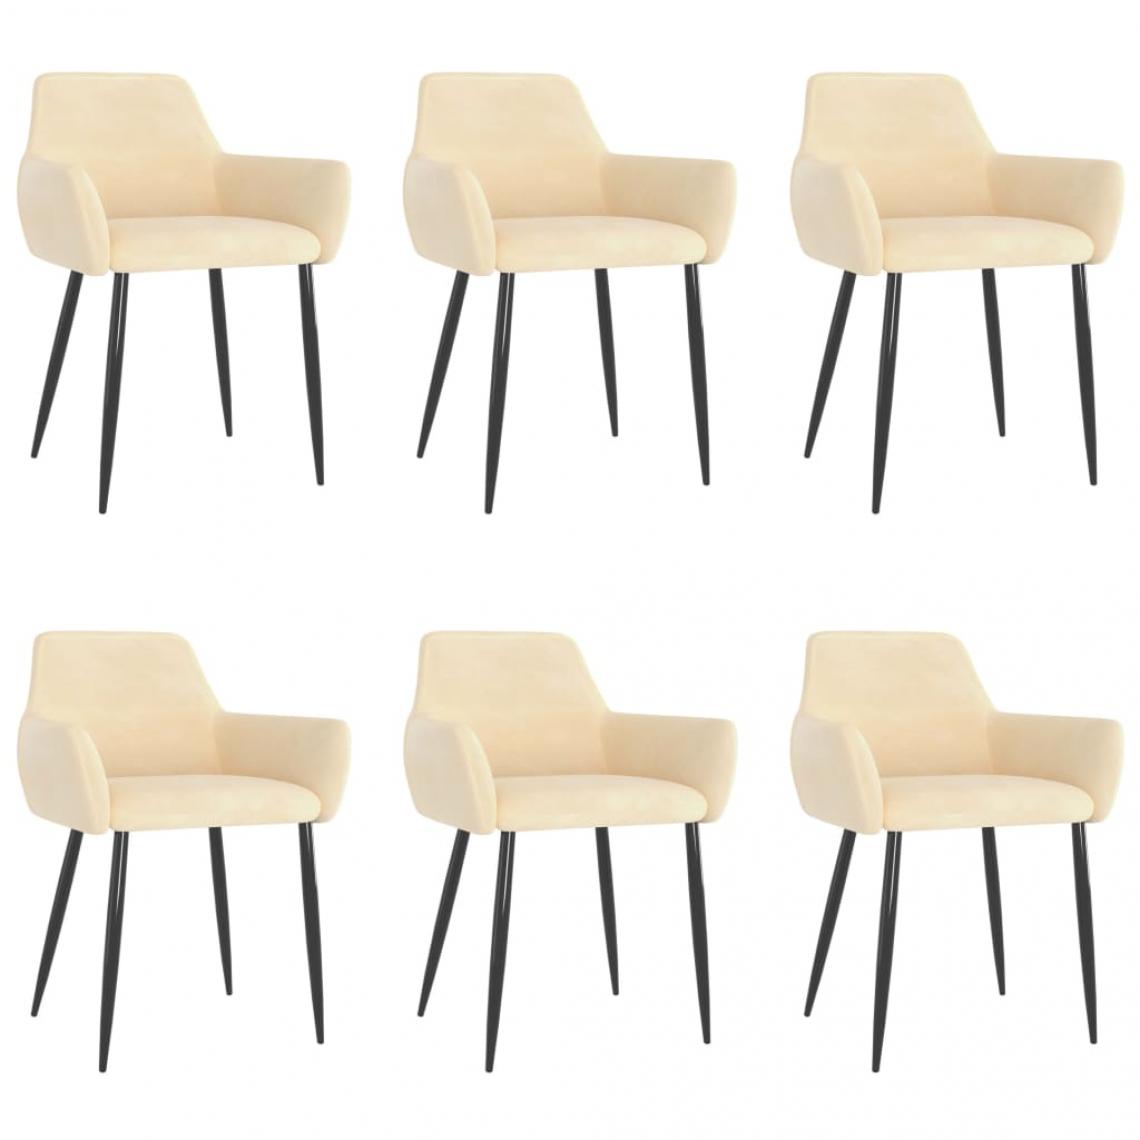 Decoshop26 - Lot de 6 chaises de salle à manger cuisine design moderne velours crème CDS022387 - Chaises